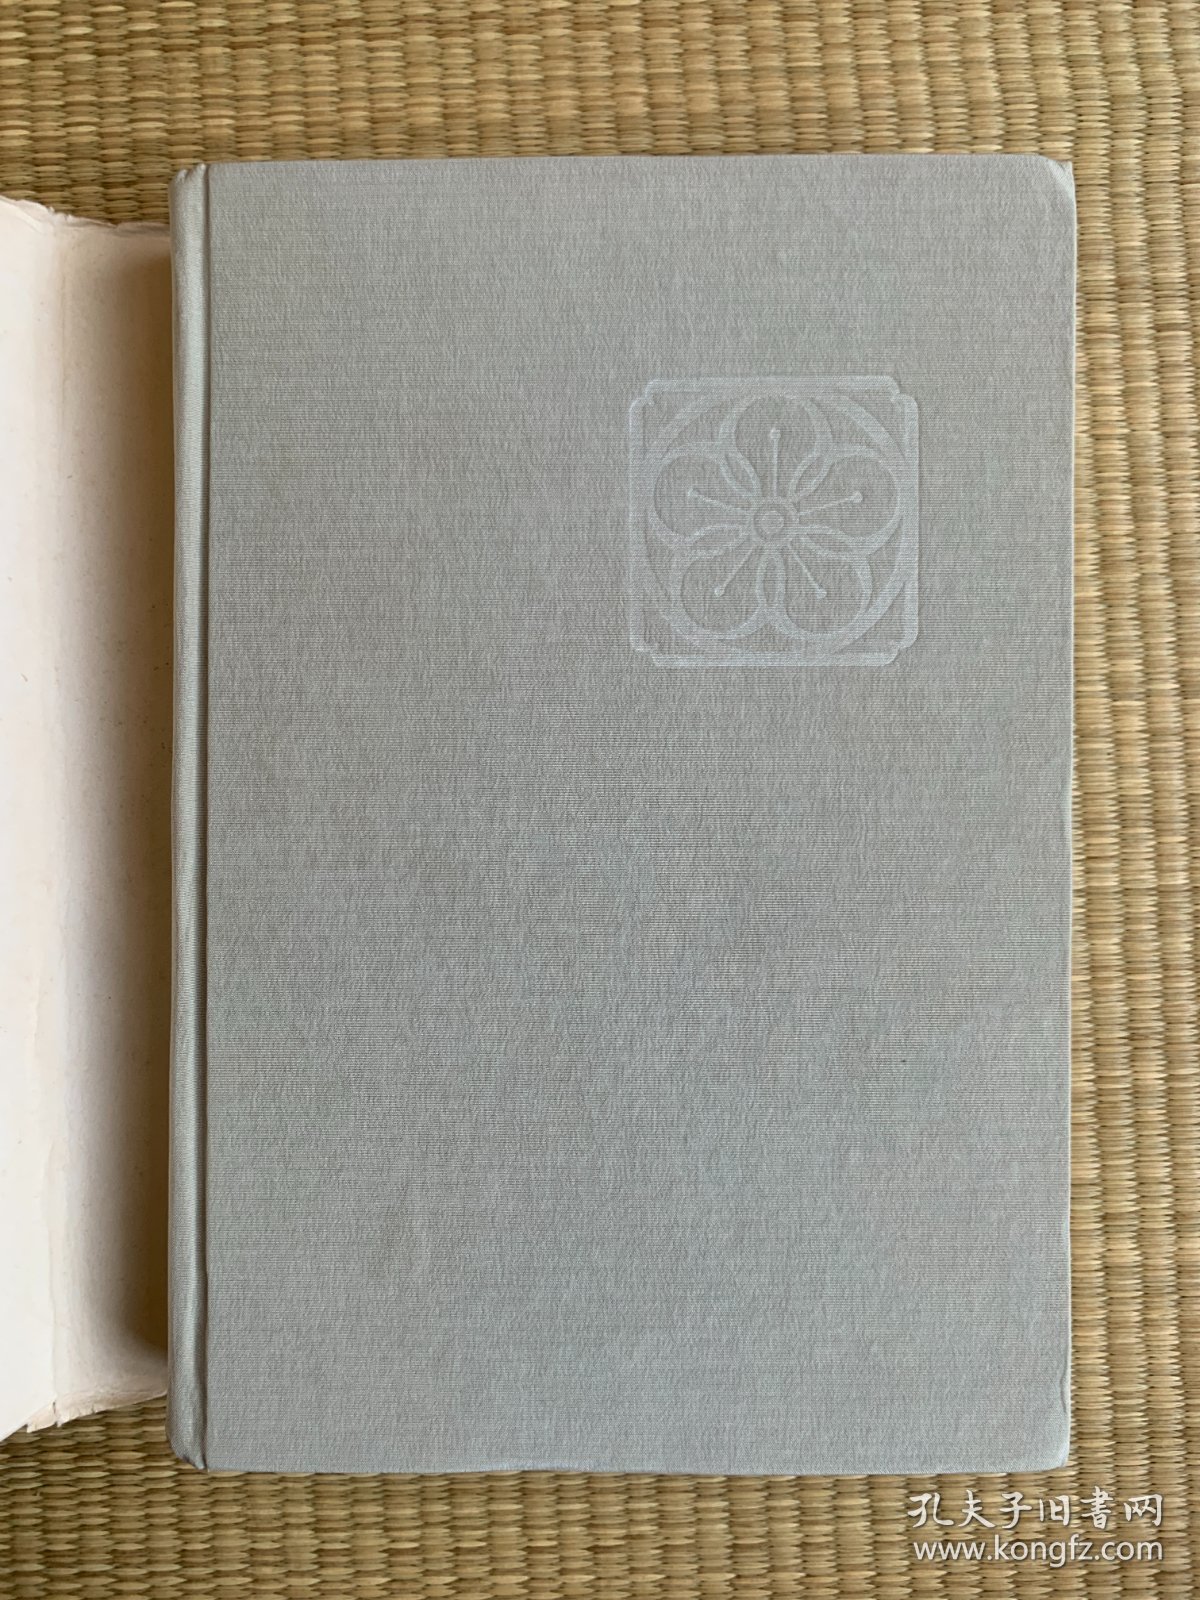 苏曼殊研究 柳亚子文集 1987年12月一版一印 印数2500册